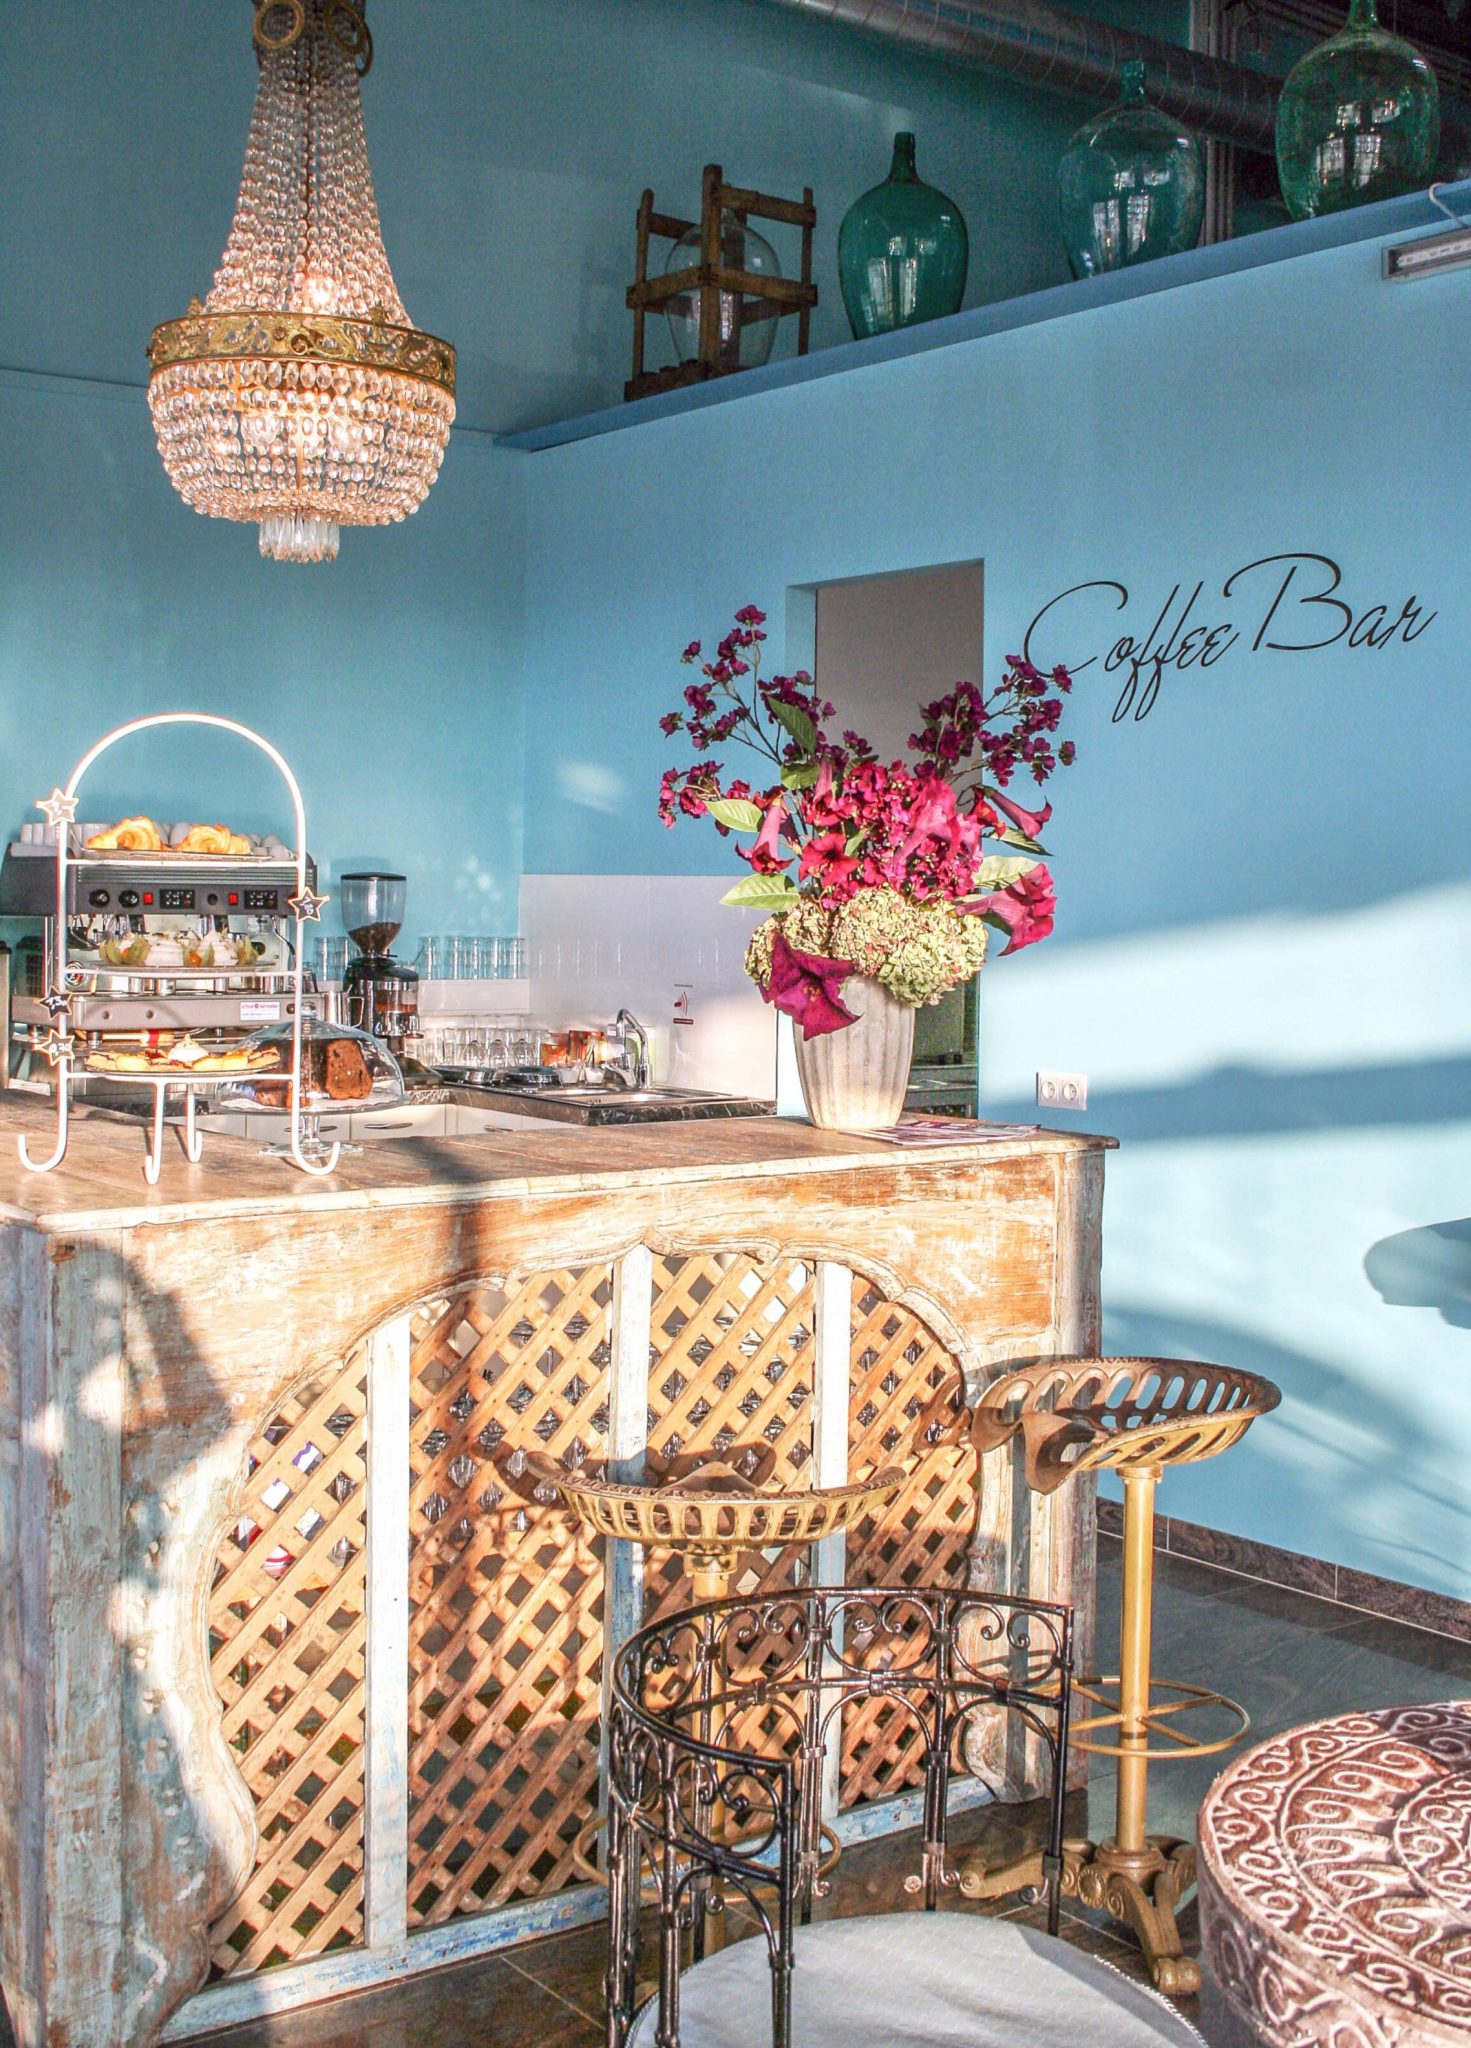 Freistehende Bar aus Holz mit weißer Etagere und Gefäß mit violetten Blumen als Dekoration vor blauer Wand.